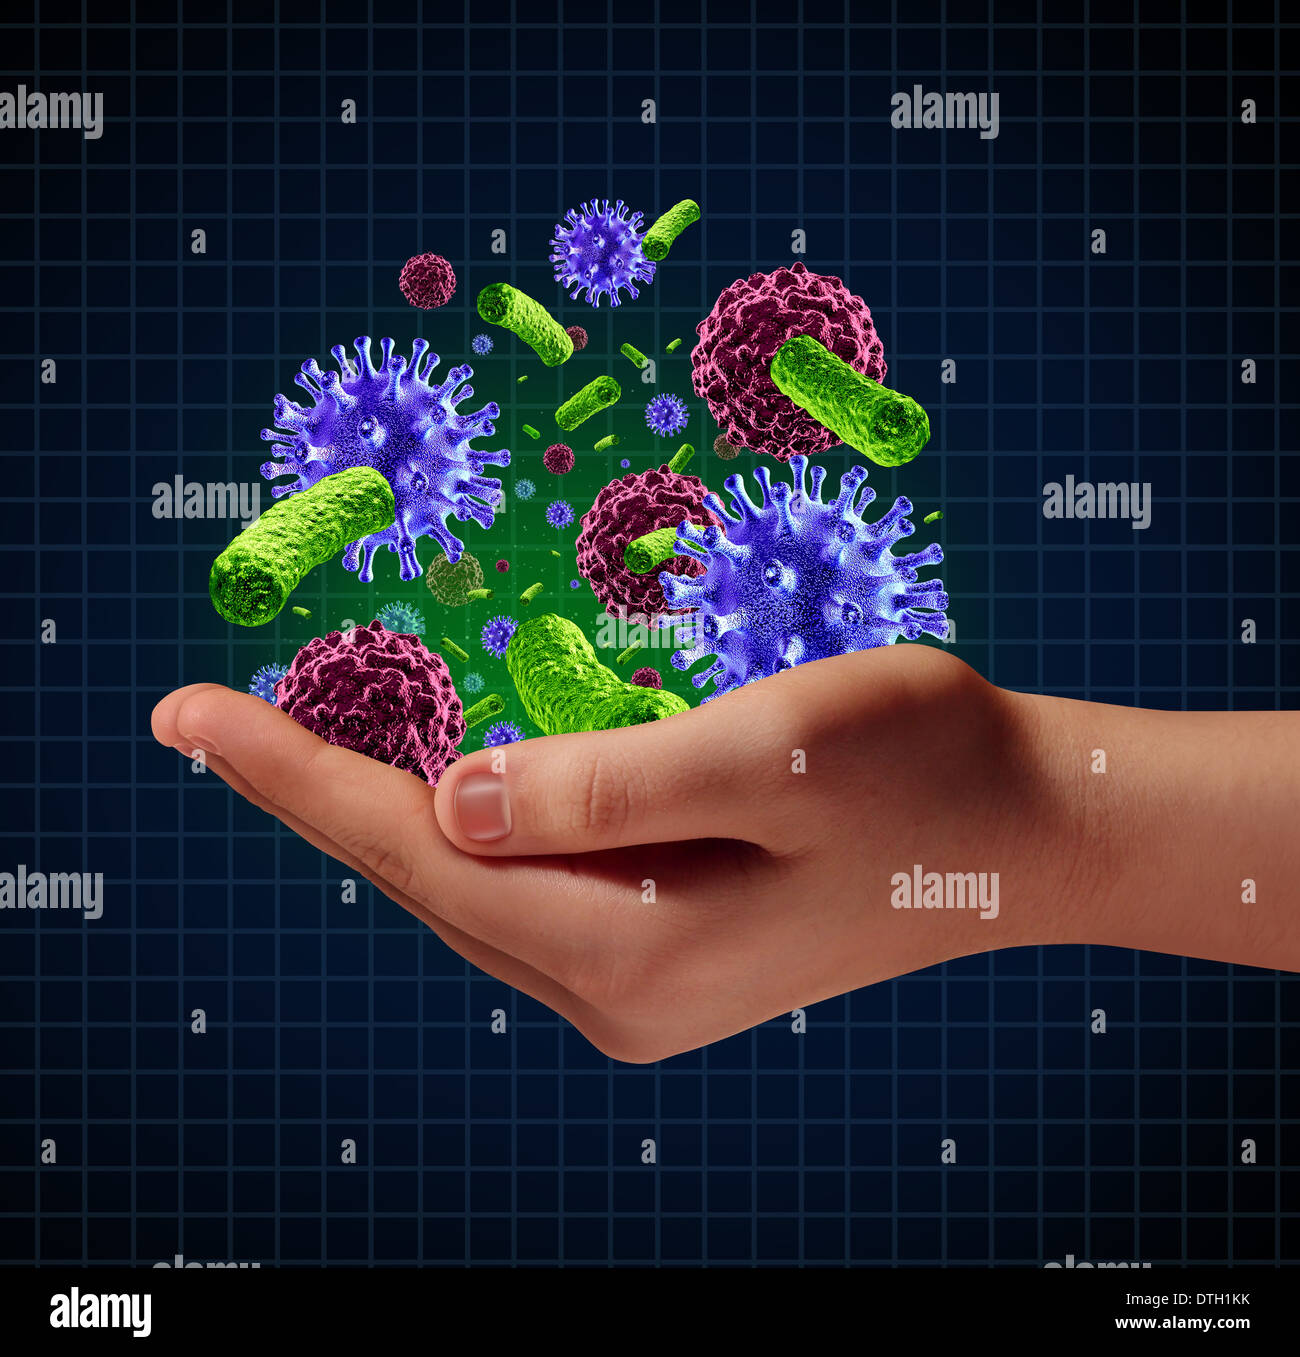 Risiko medizinische Gesundheitsversorgung Krankheitskonzept mit einer menschlichen Hand mikroskopischen Krebs Viren und Bakterien Zellen als Metapher für den Erreger Schutz vor ansteckenden Krankheit und Krankheit. Stockfoto